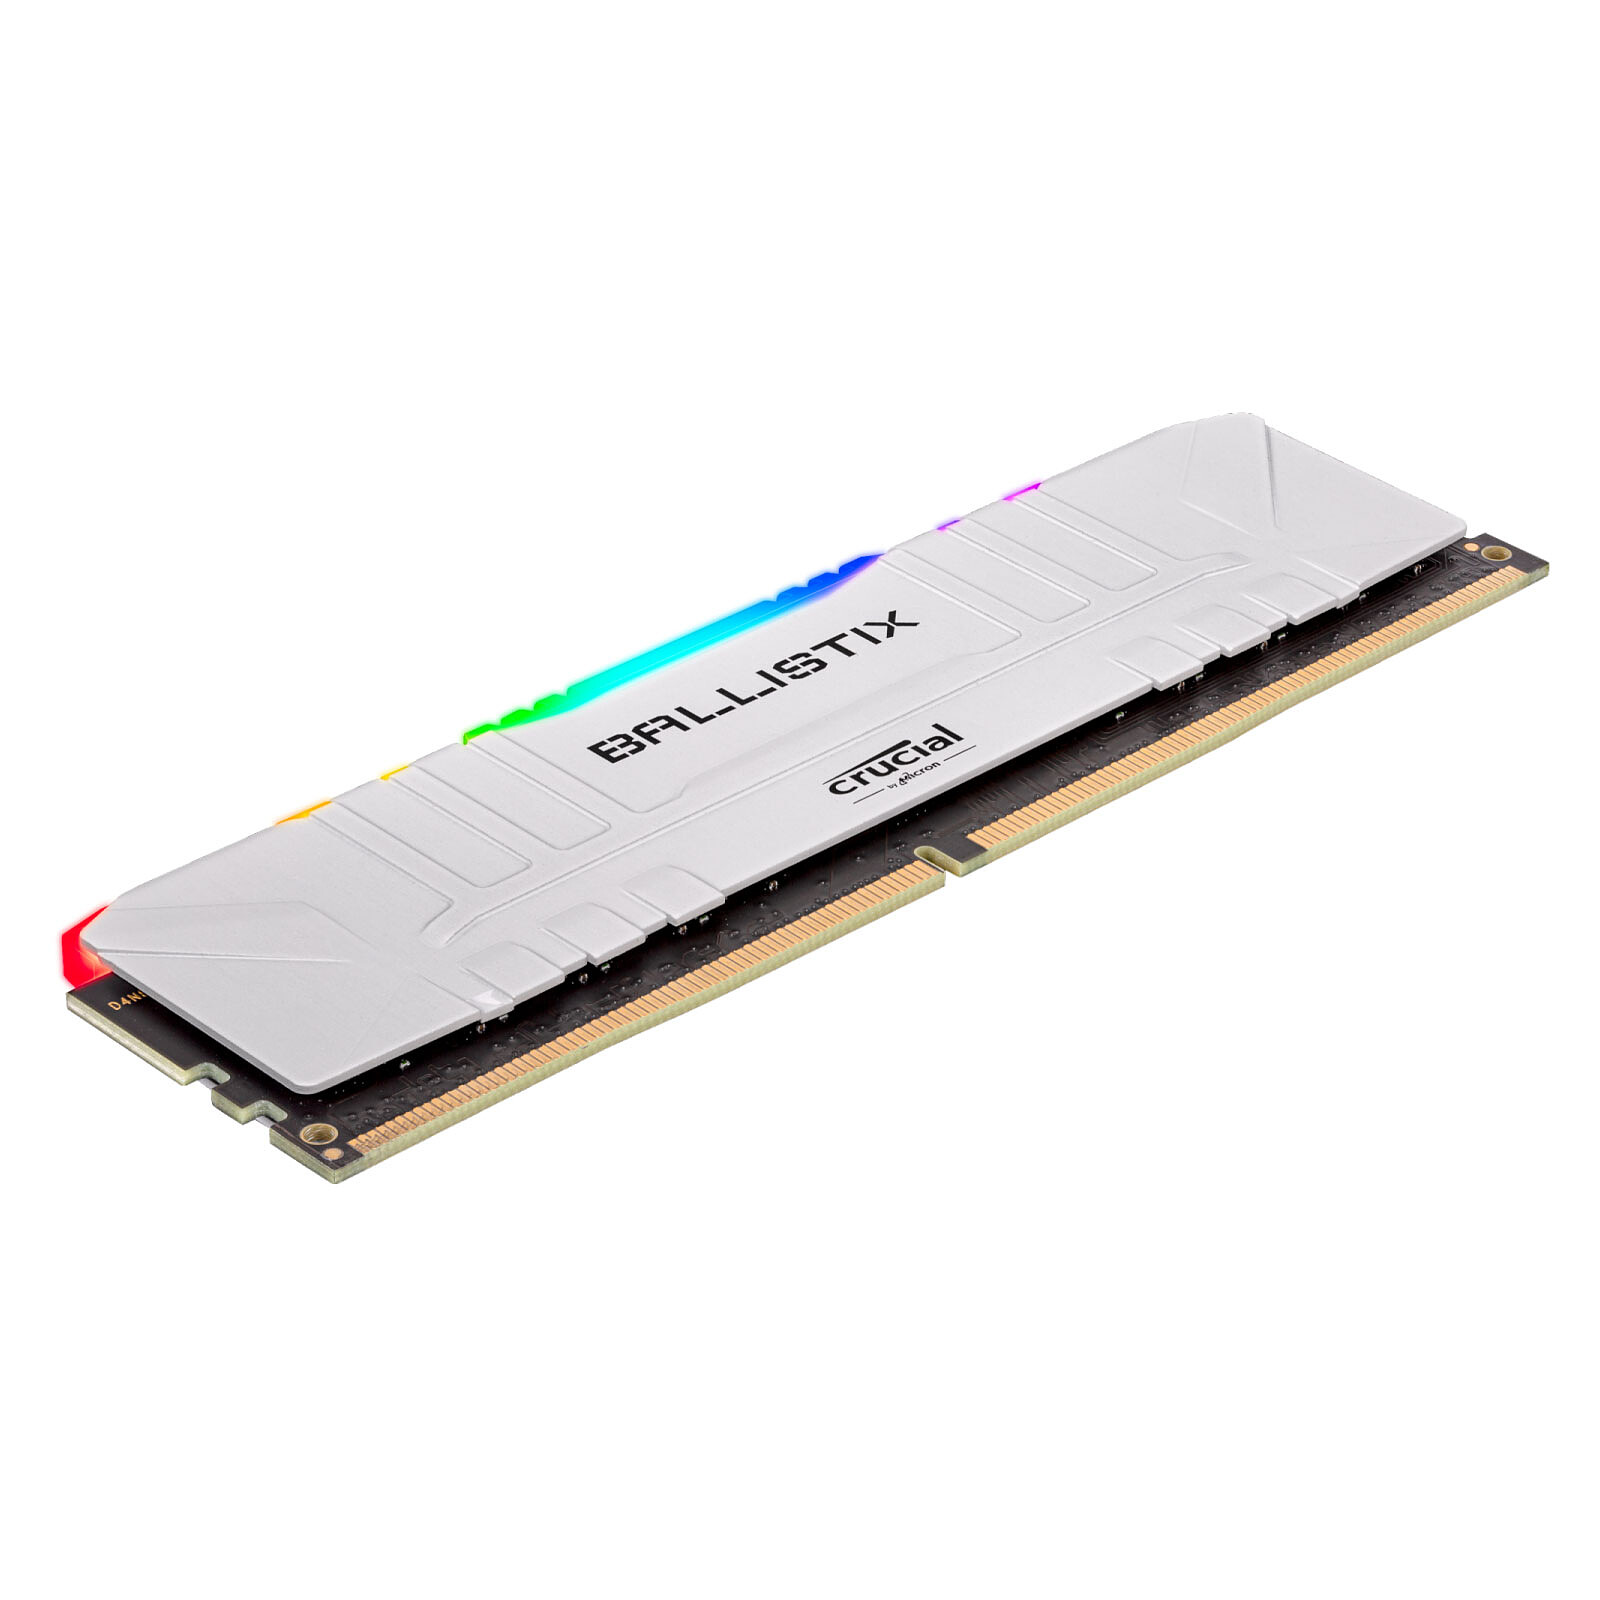 Crucial Ballistix Dimm DDR4 16Go (2x8Go) 3600Mhz White RGB